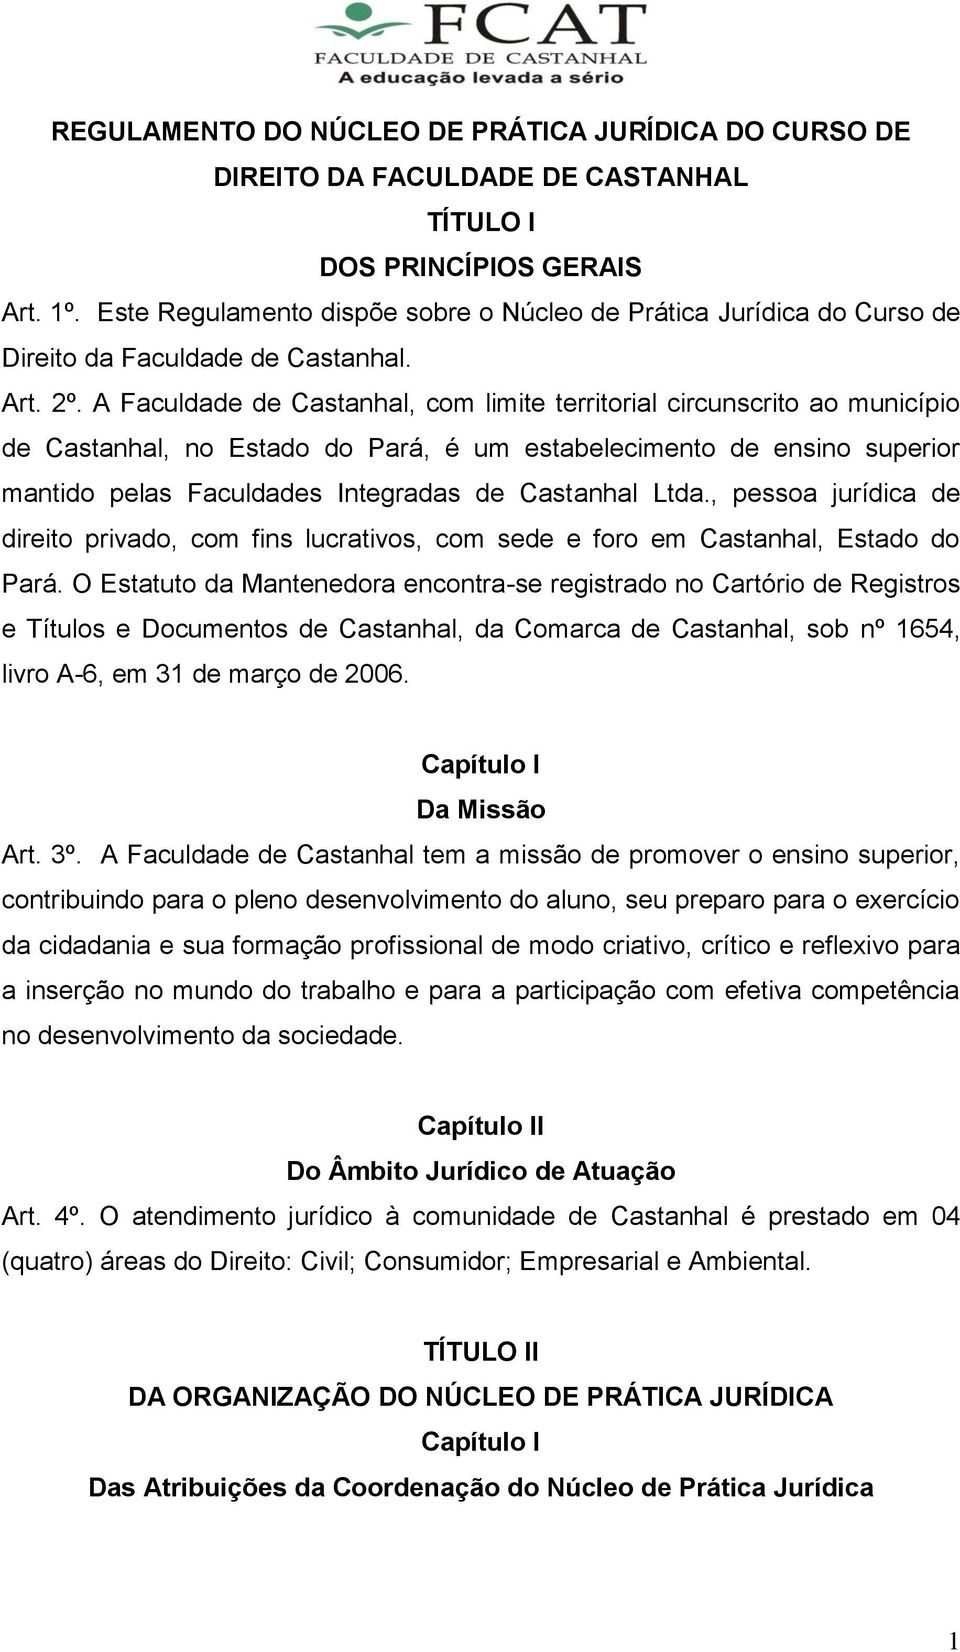 A Faculdade de Castanhal, com limite territorial circunscrito ao município de Castanhal, no Estado do Pará, é um estabelecimento de ensino superior mantido pelas Faculdades Integradas de Castanhal